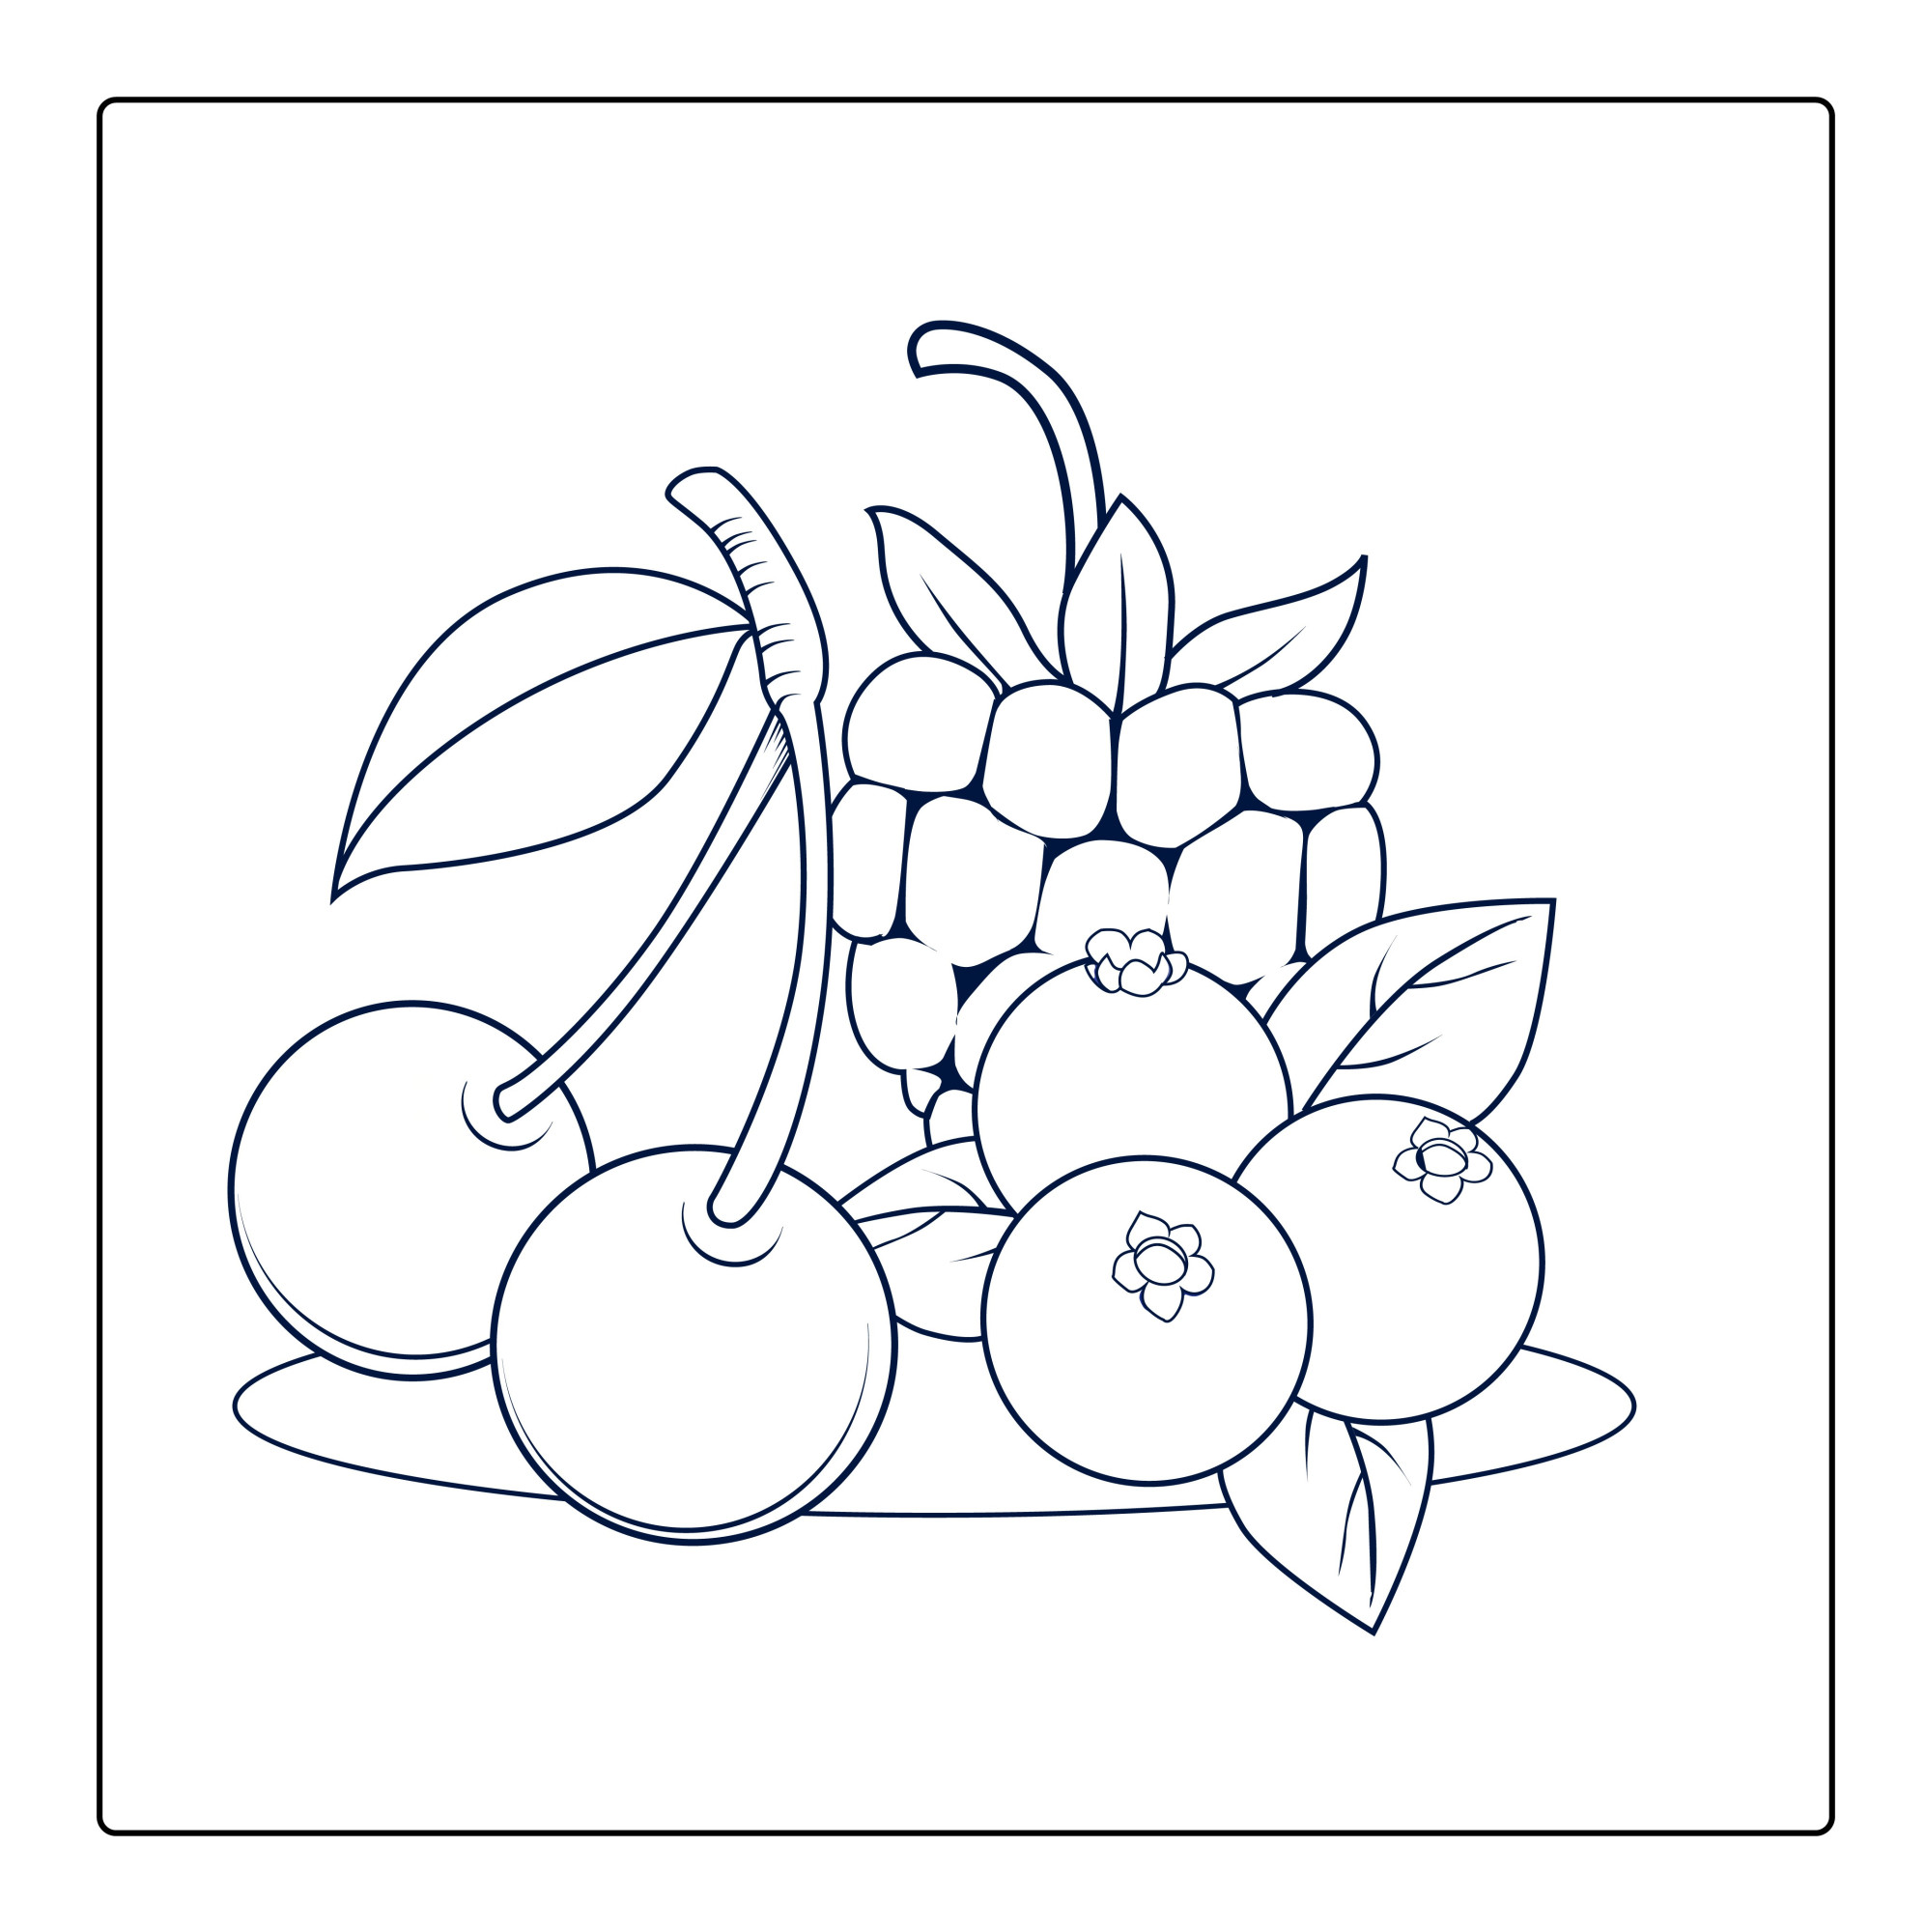 Раскраска для детей: ягода малины с вишней и черникой